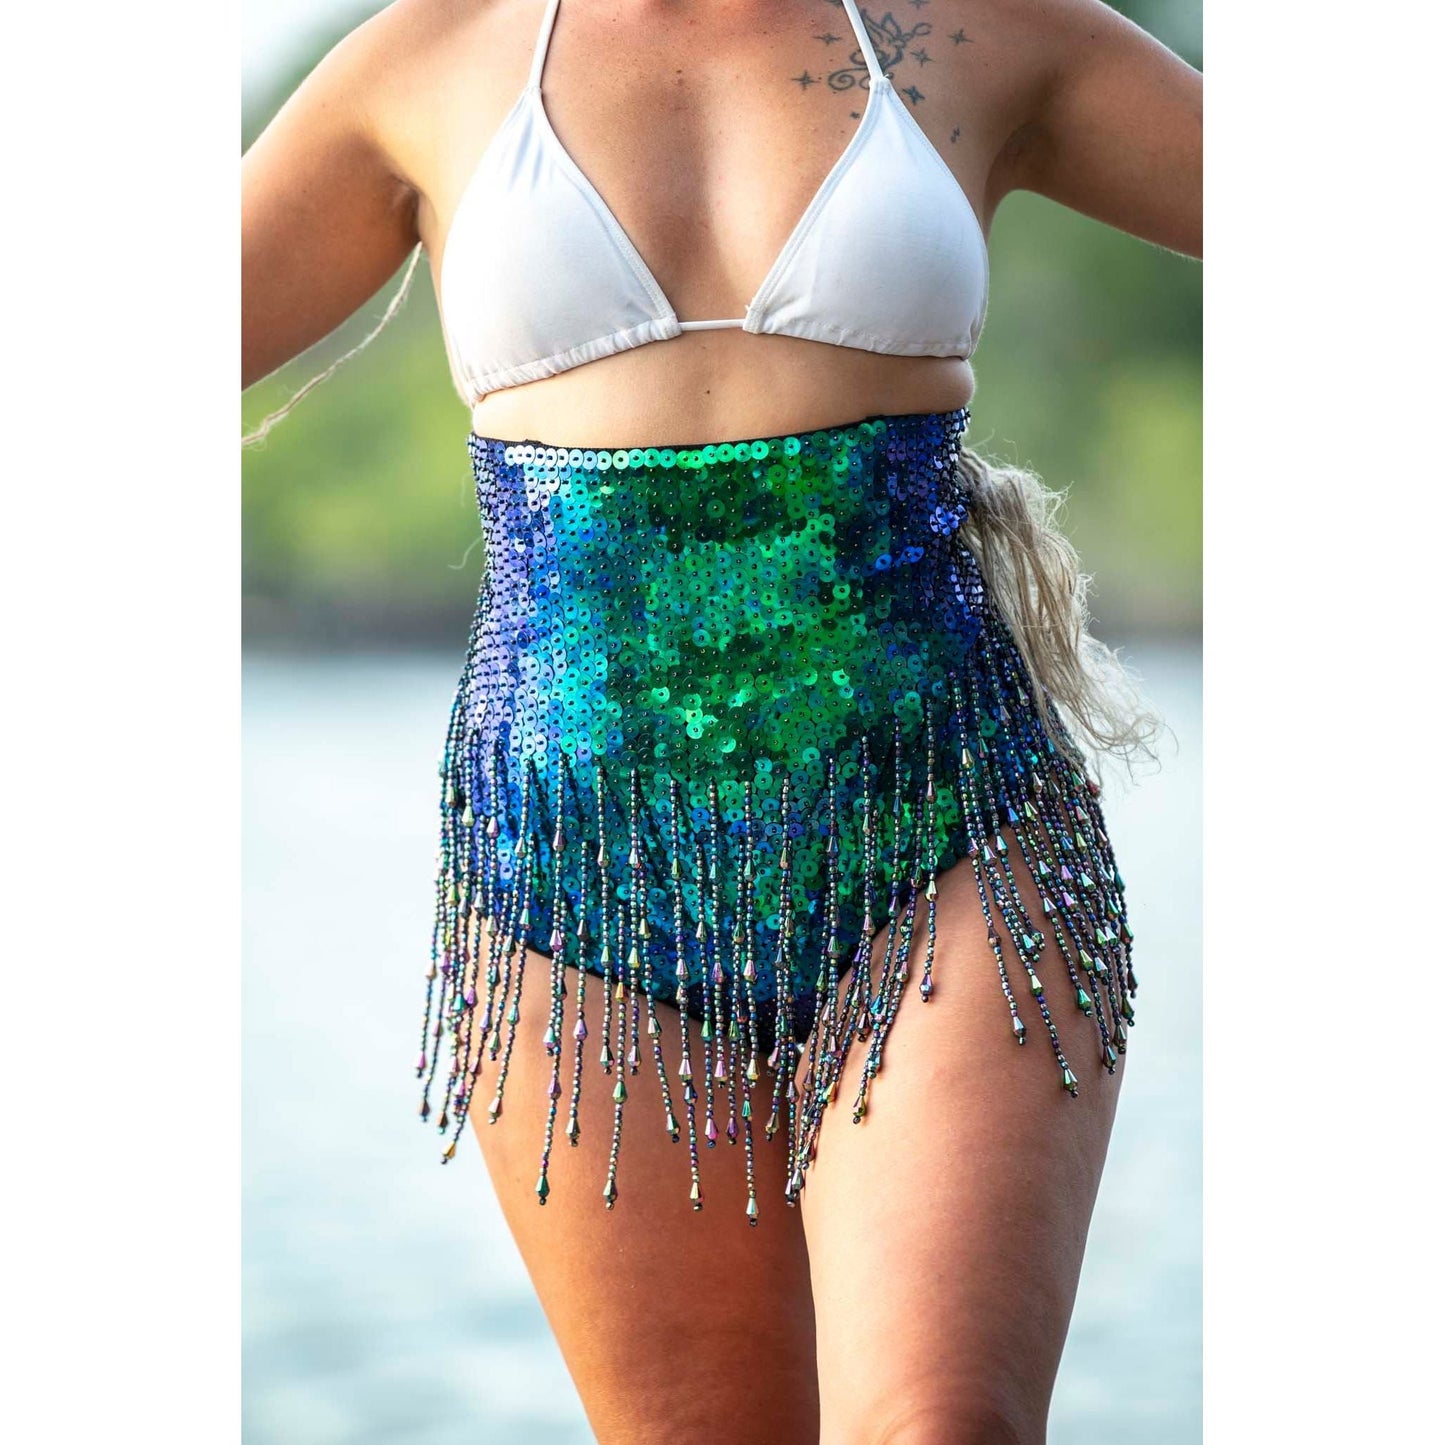 Mermaid Cheeky High Waist Sequin Shorts